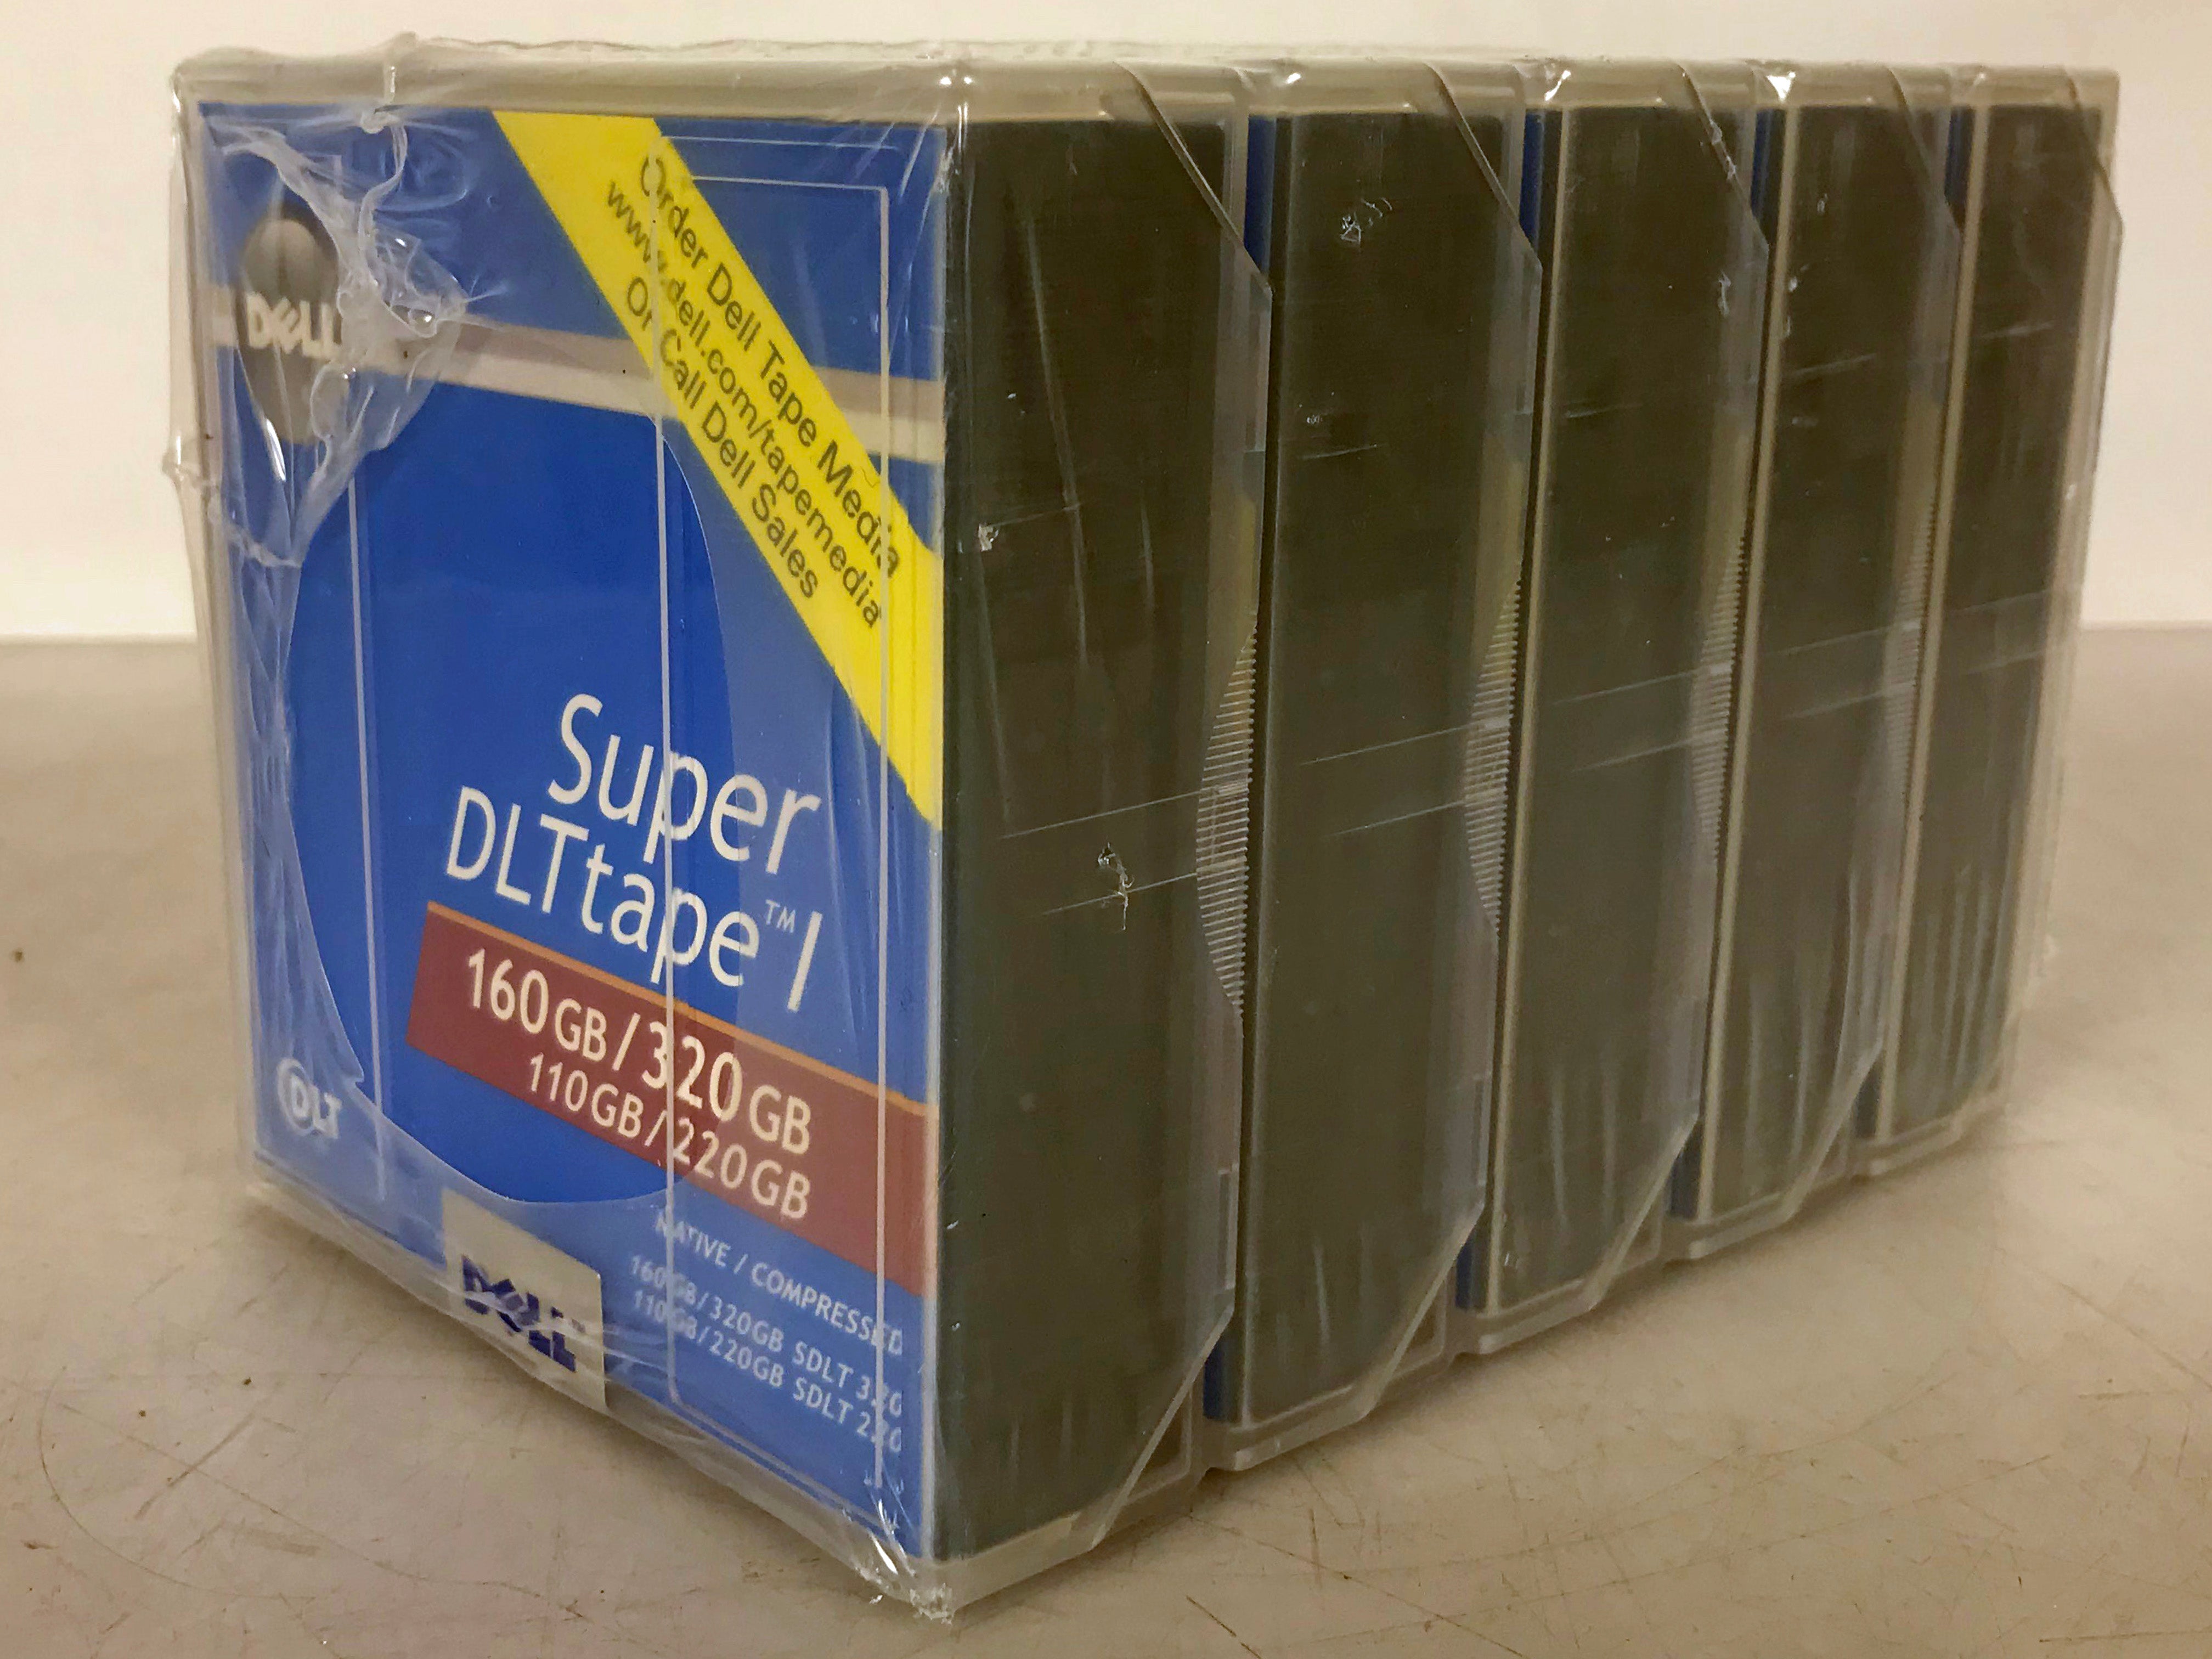 5-Pack Dell Super DLTtape I 160GB/320GB 9W085 Tape Cartridges